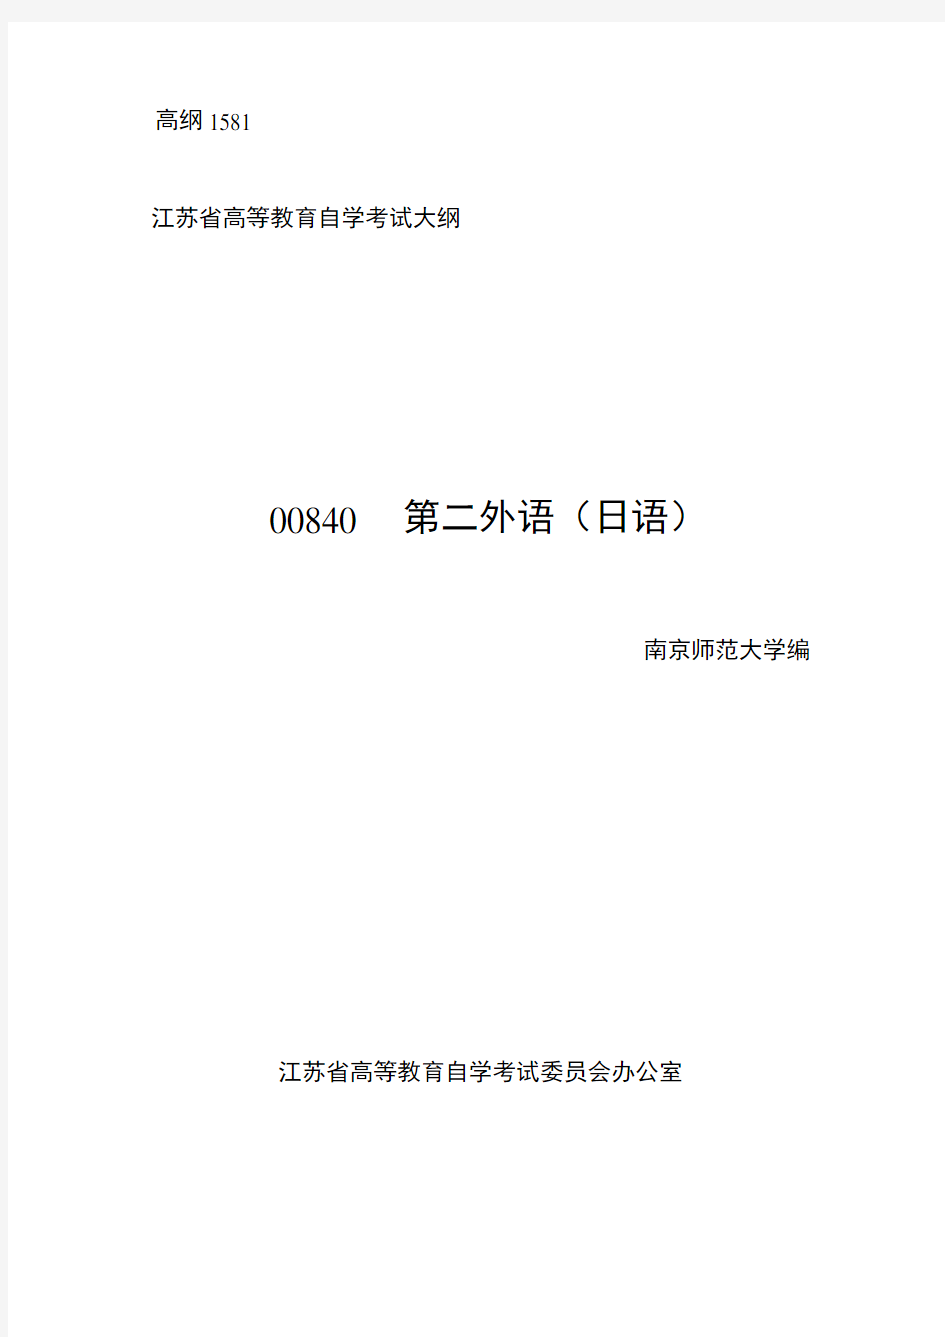 自考大纲00840第二外语日语